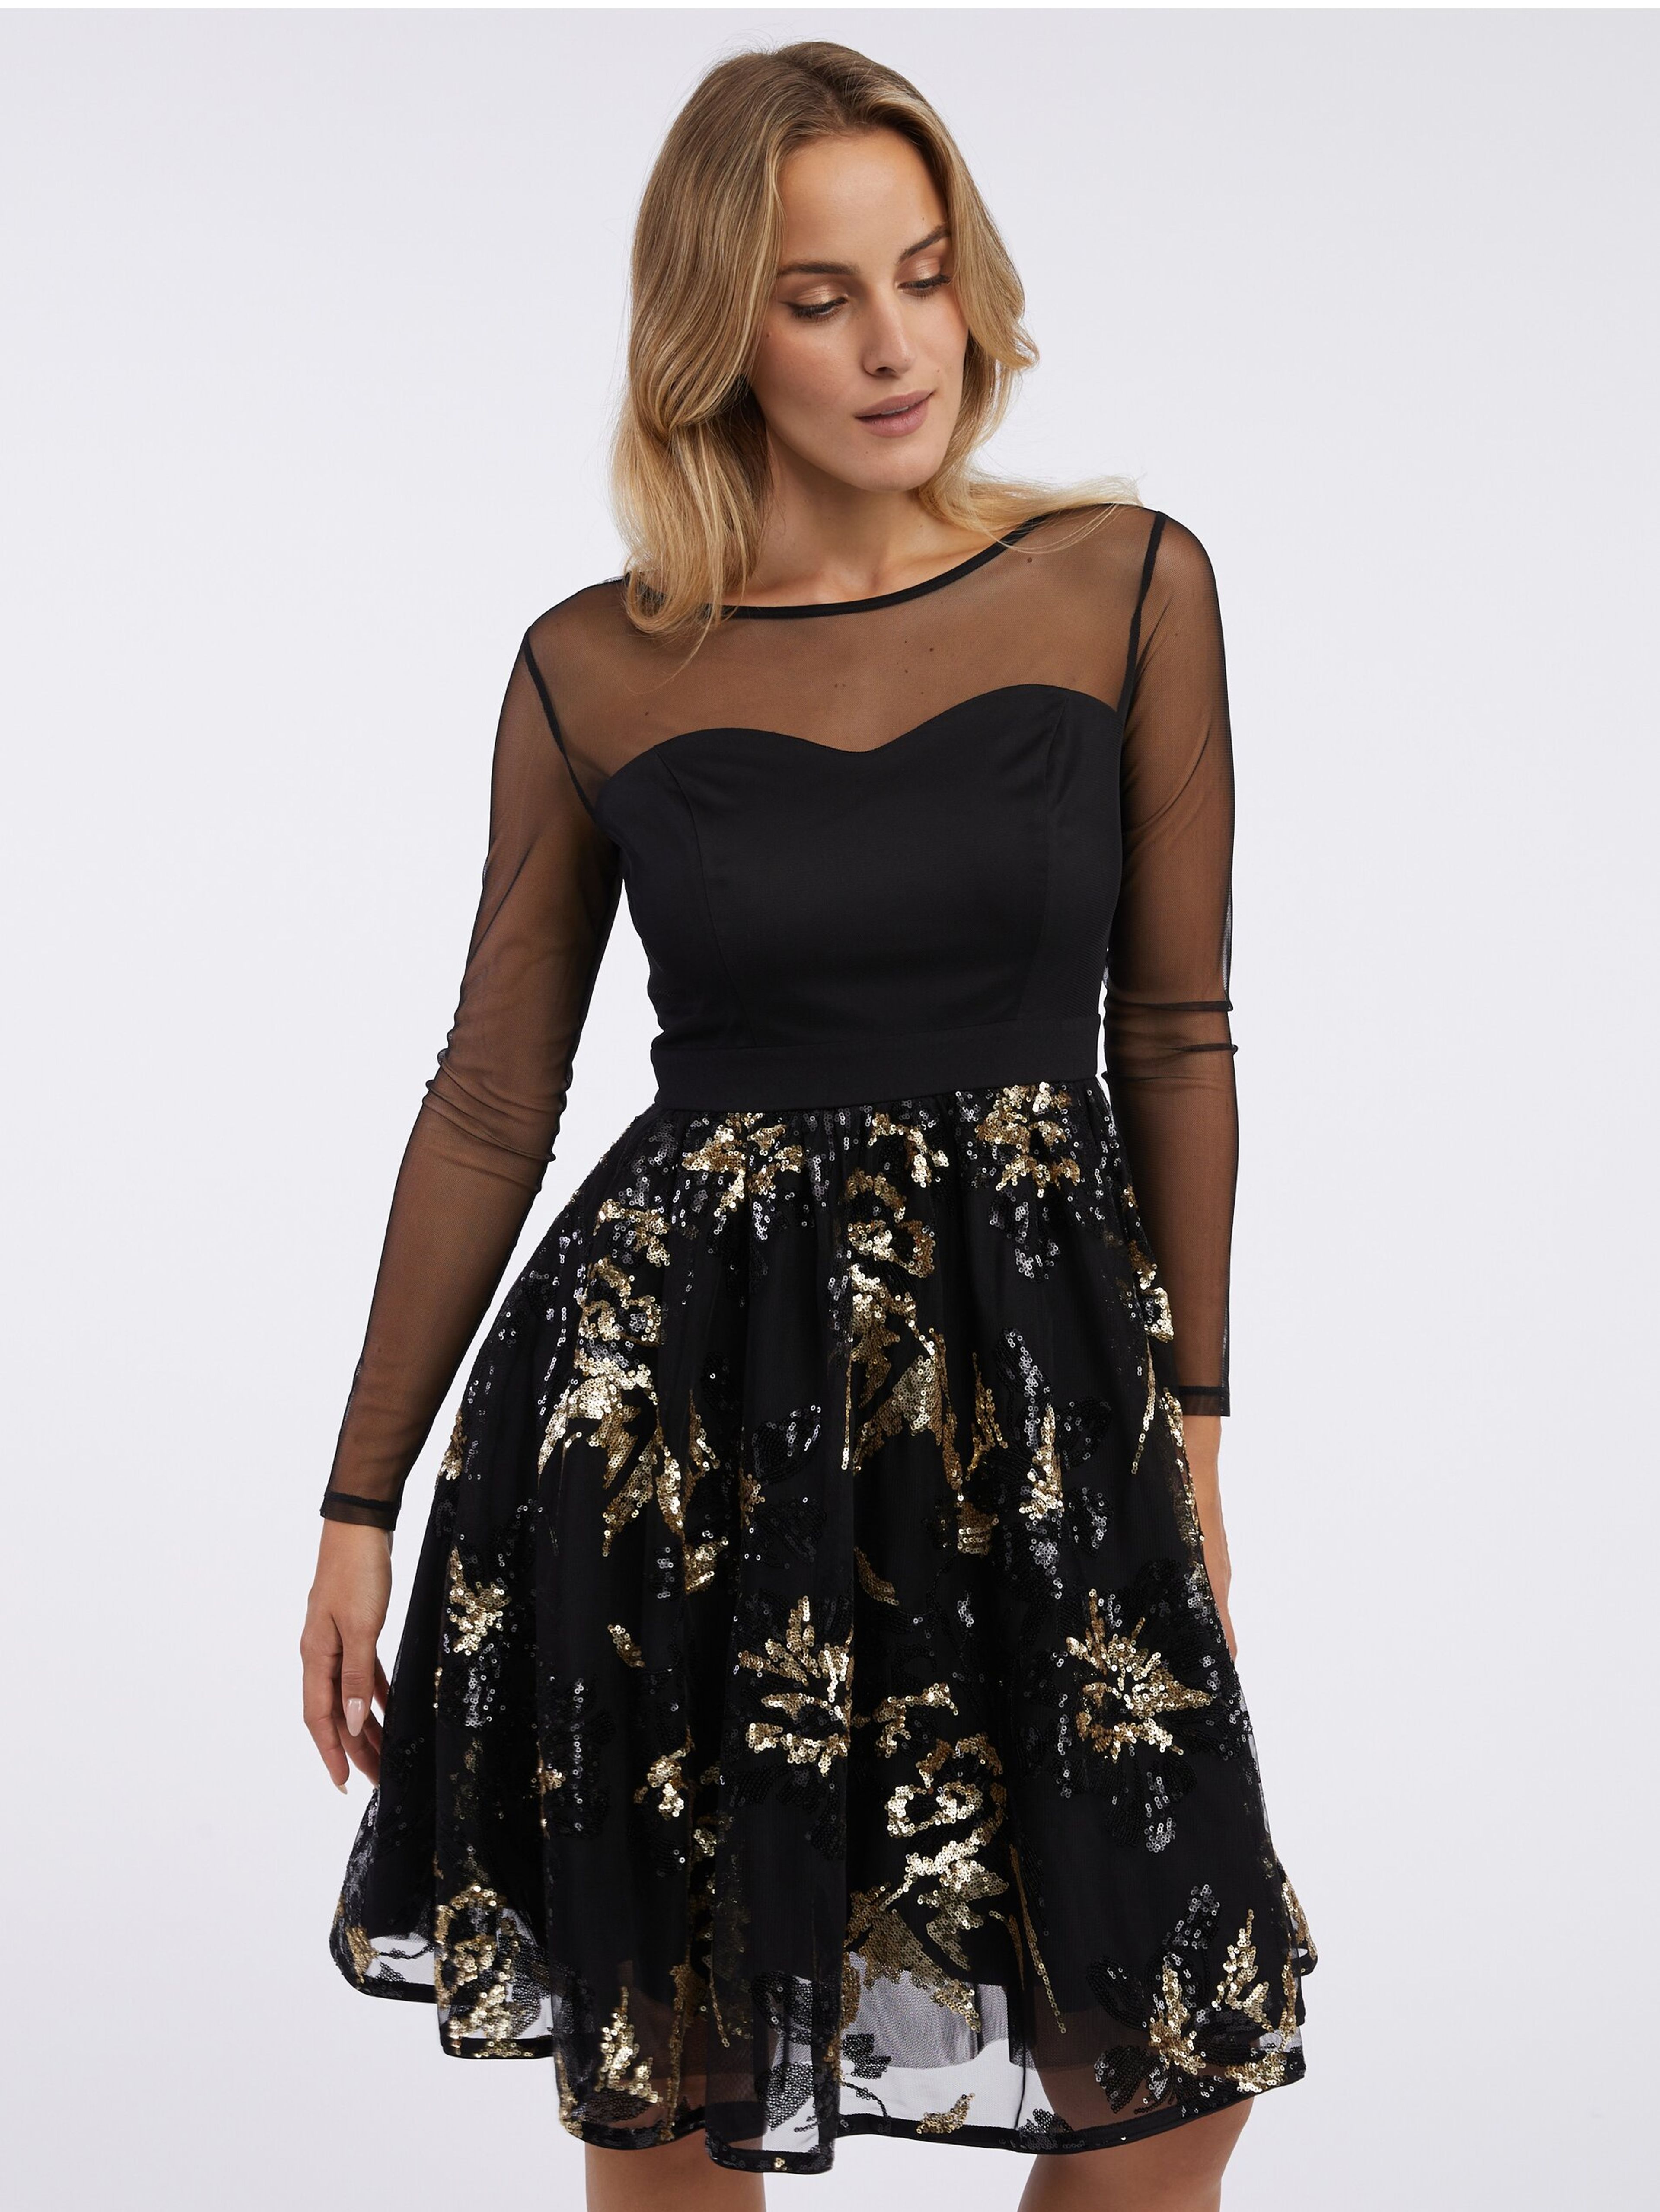 Čierne dámske šaty s flitrami ORSAY